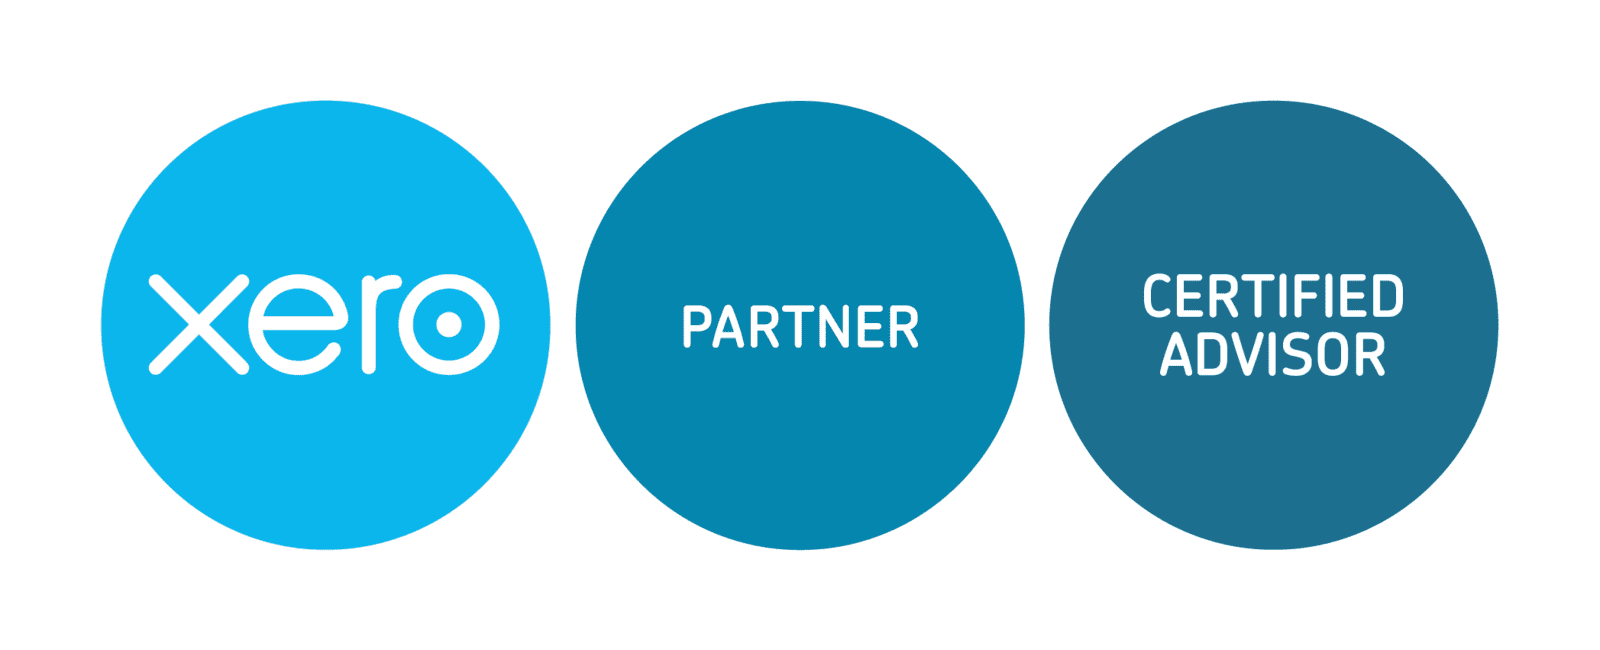 Xero Partner Certified Advisor logo